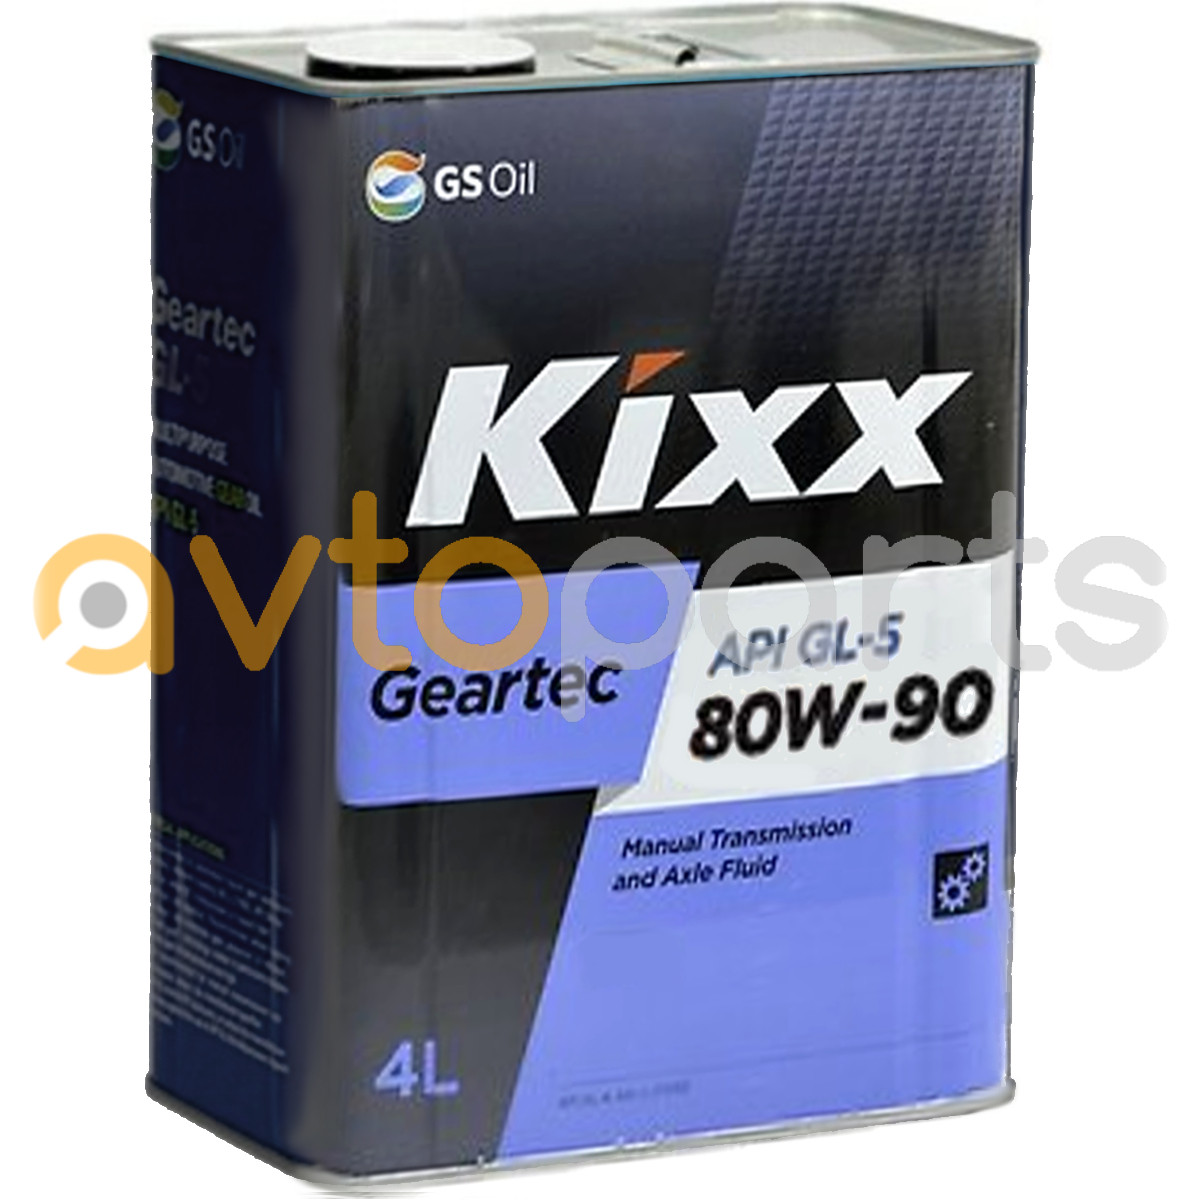 Kixx 75w85. Kixx 75 85 gl4. Трансмиссионное масло Кикс 75w85. Трансмиссионное масло Кикс 75w85 gl-4. Kixx Geartec gl-4.